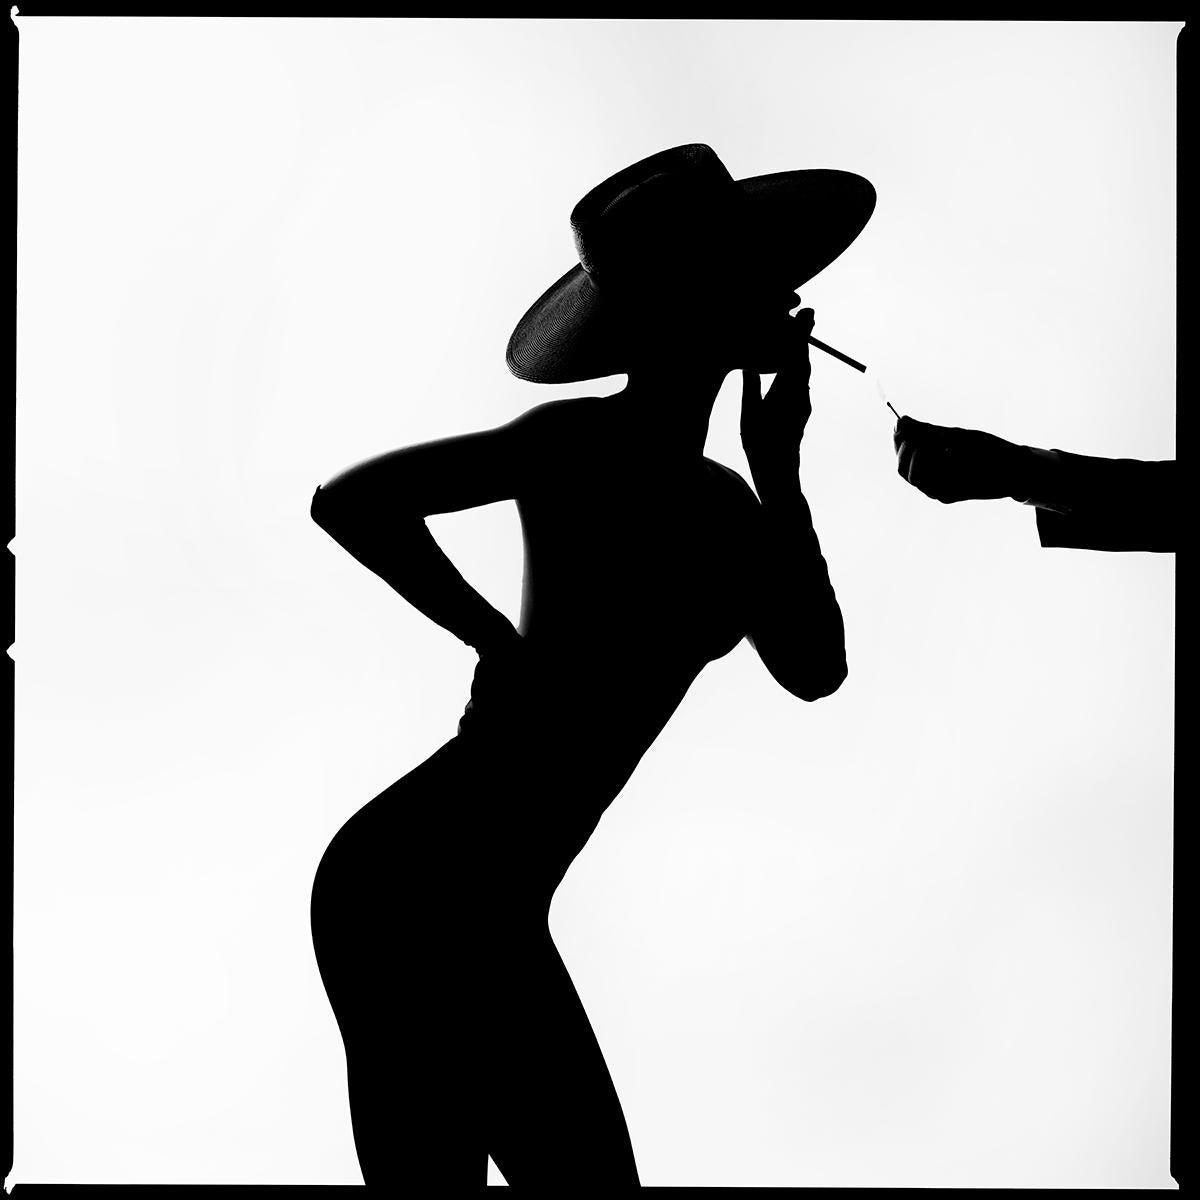 Série : Silhouette Match
Impression chromogène sur papier Kodak Endura Luster
Toutes les tailles et éditions disponibles :
18" x 18"
30" x 30"
45" x 45"
60" x 60"
70" x 70"
Éditions de 3 + 2 Artist Proofs

Tyler Shields est un photographe,